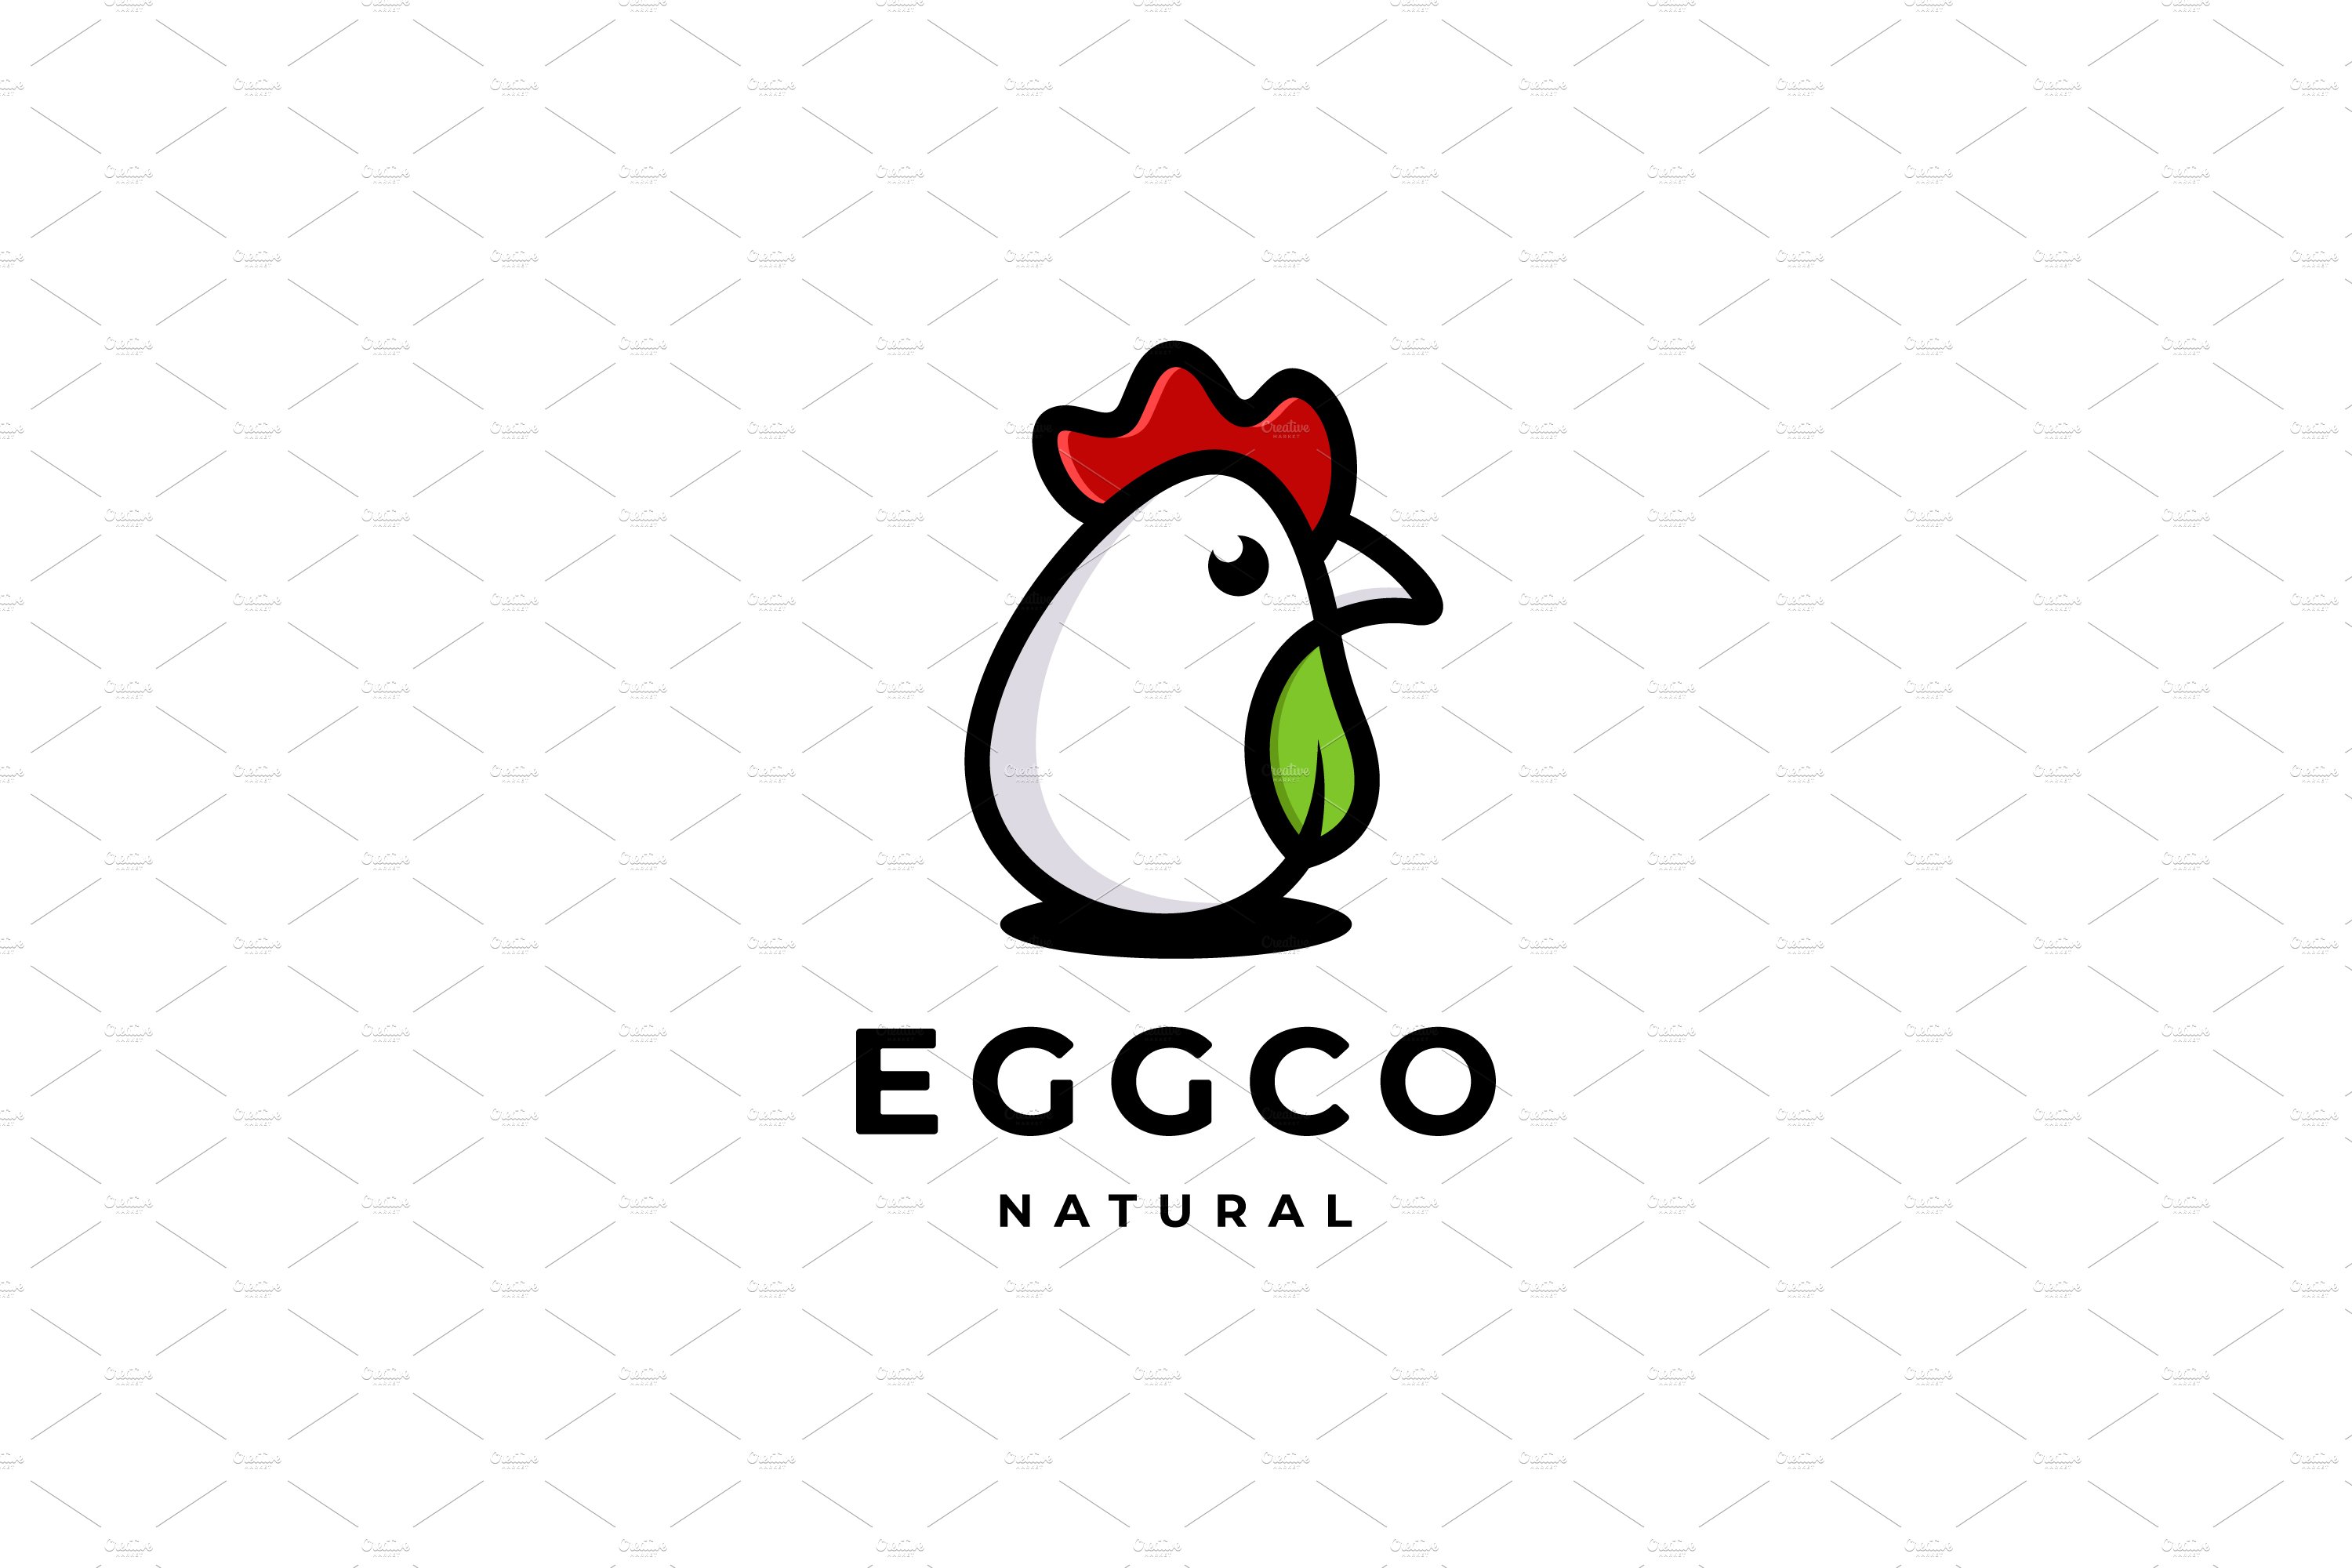 Chicken Egg Natural Leaf Logo cover image.